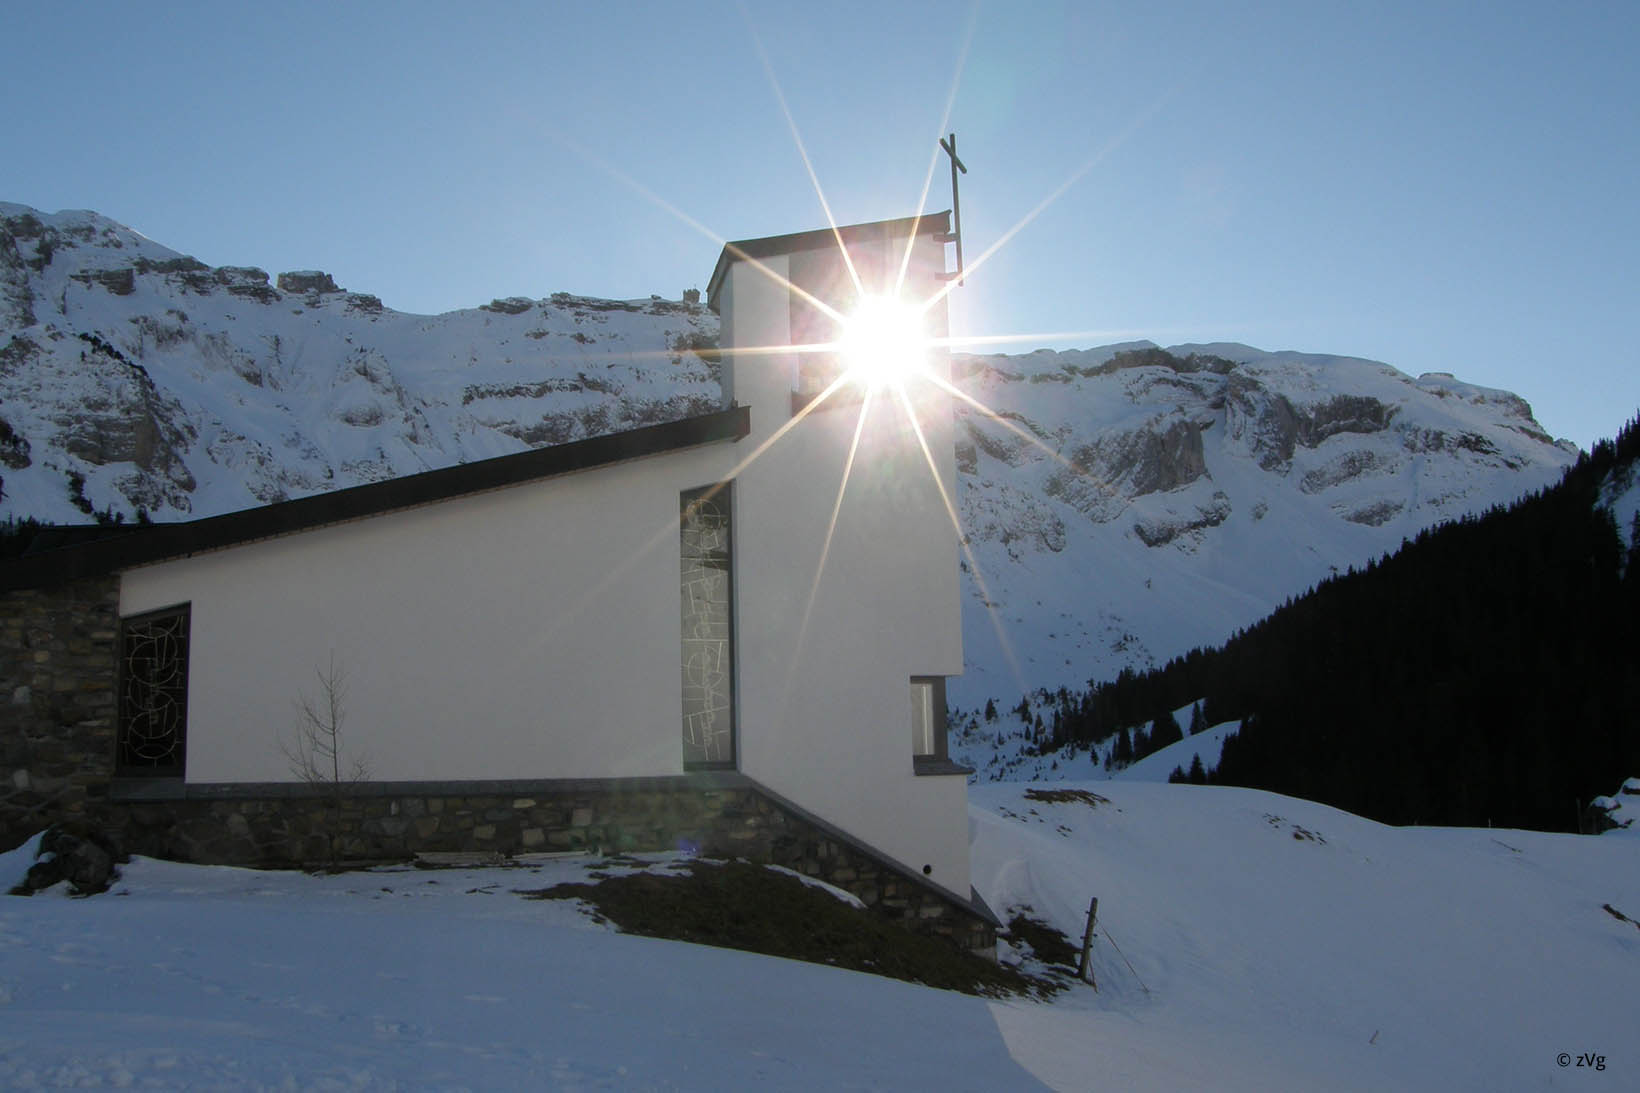 Le soleil se réfléchissant sur la fenêtre d’une église. Celle-ci est entourée d’un paysage montagneux sous la neige.